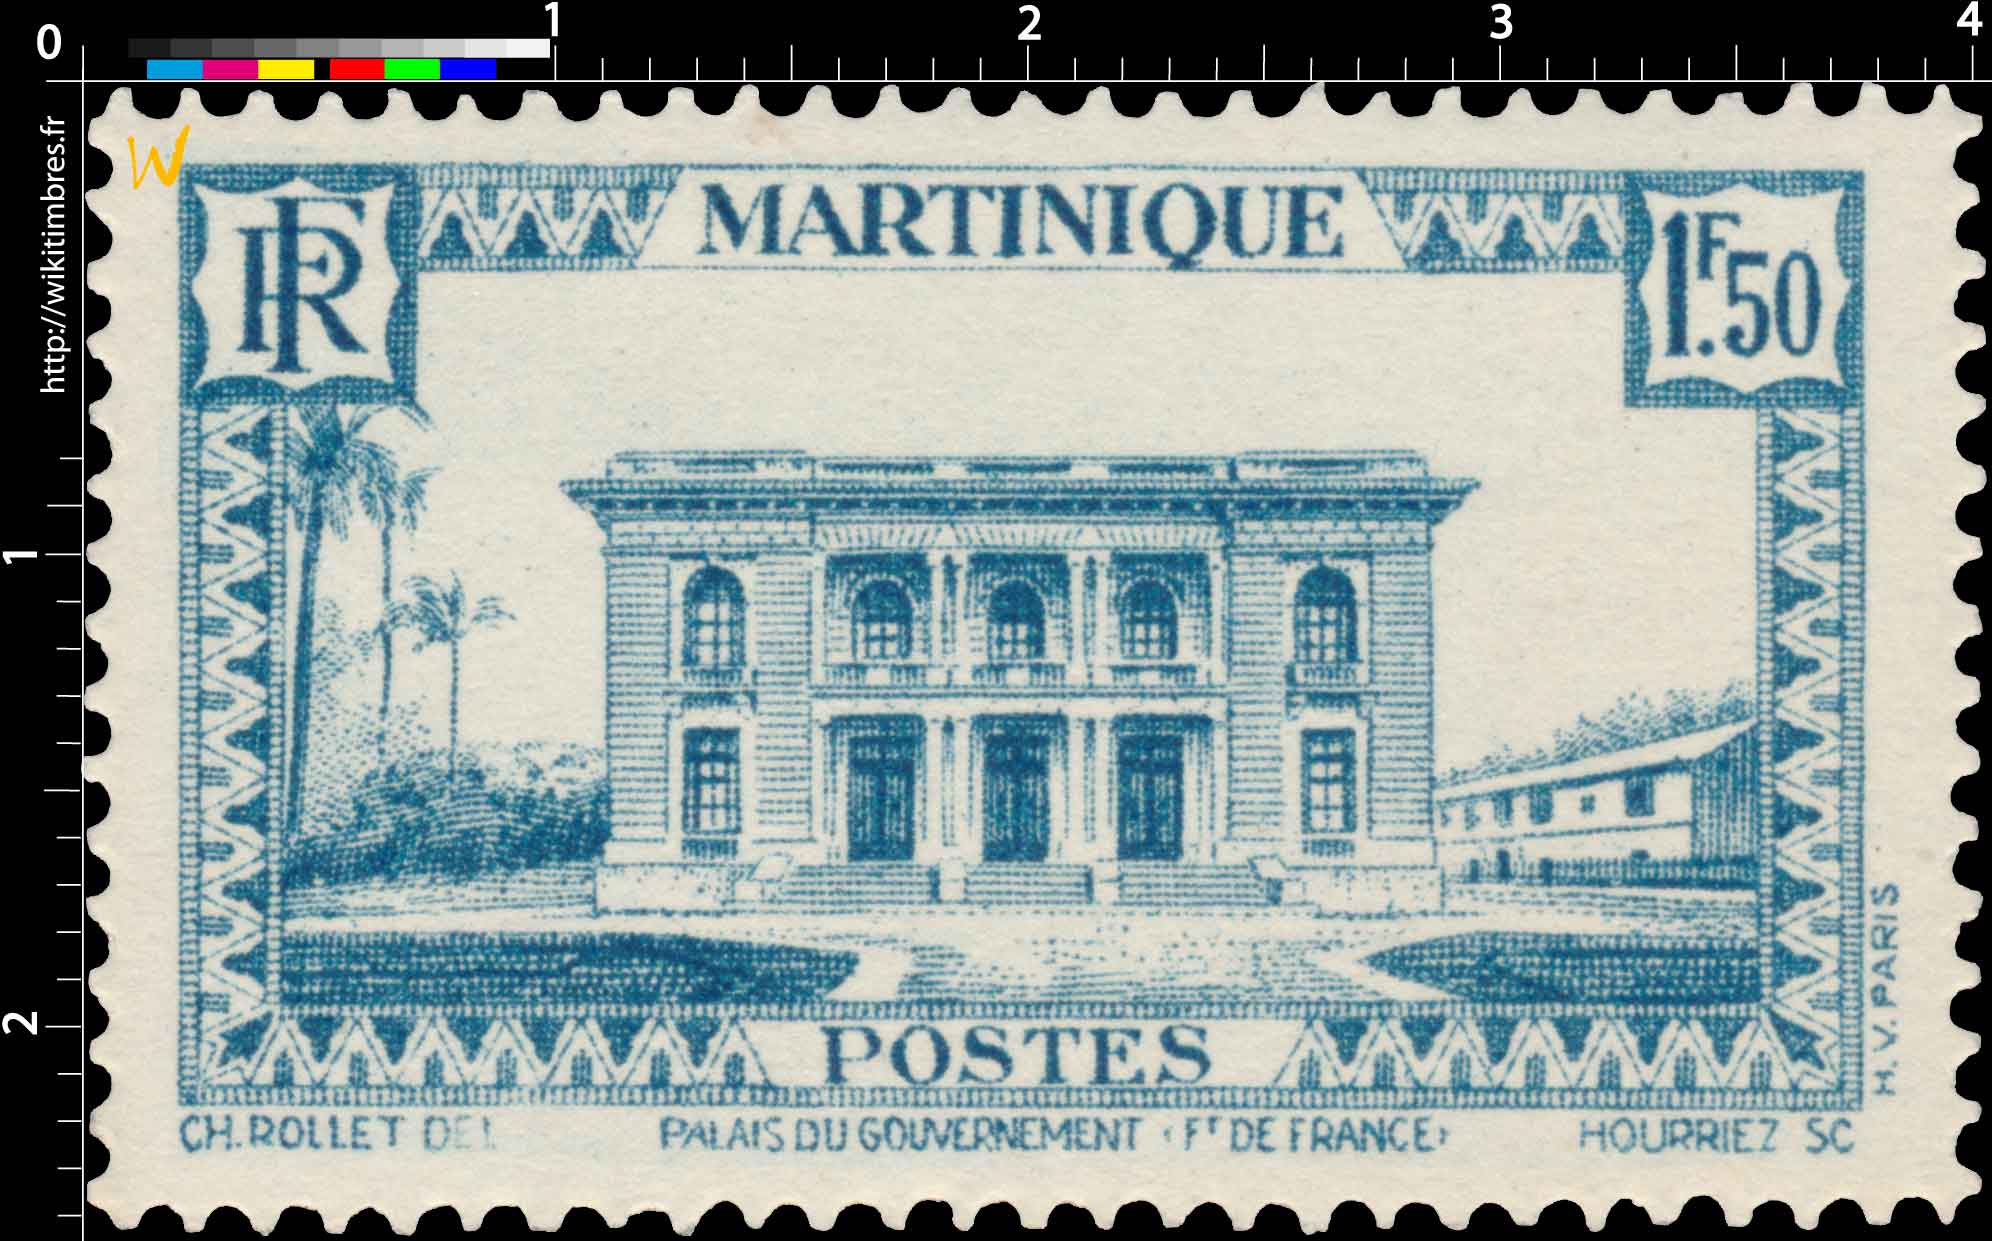 Martinique - Palais du gouvernement, Fort-de-France